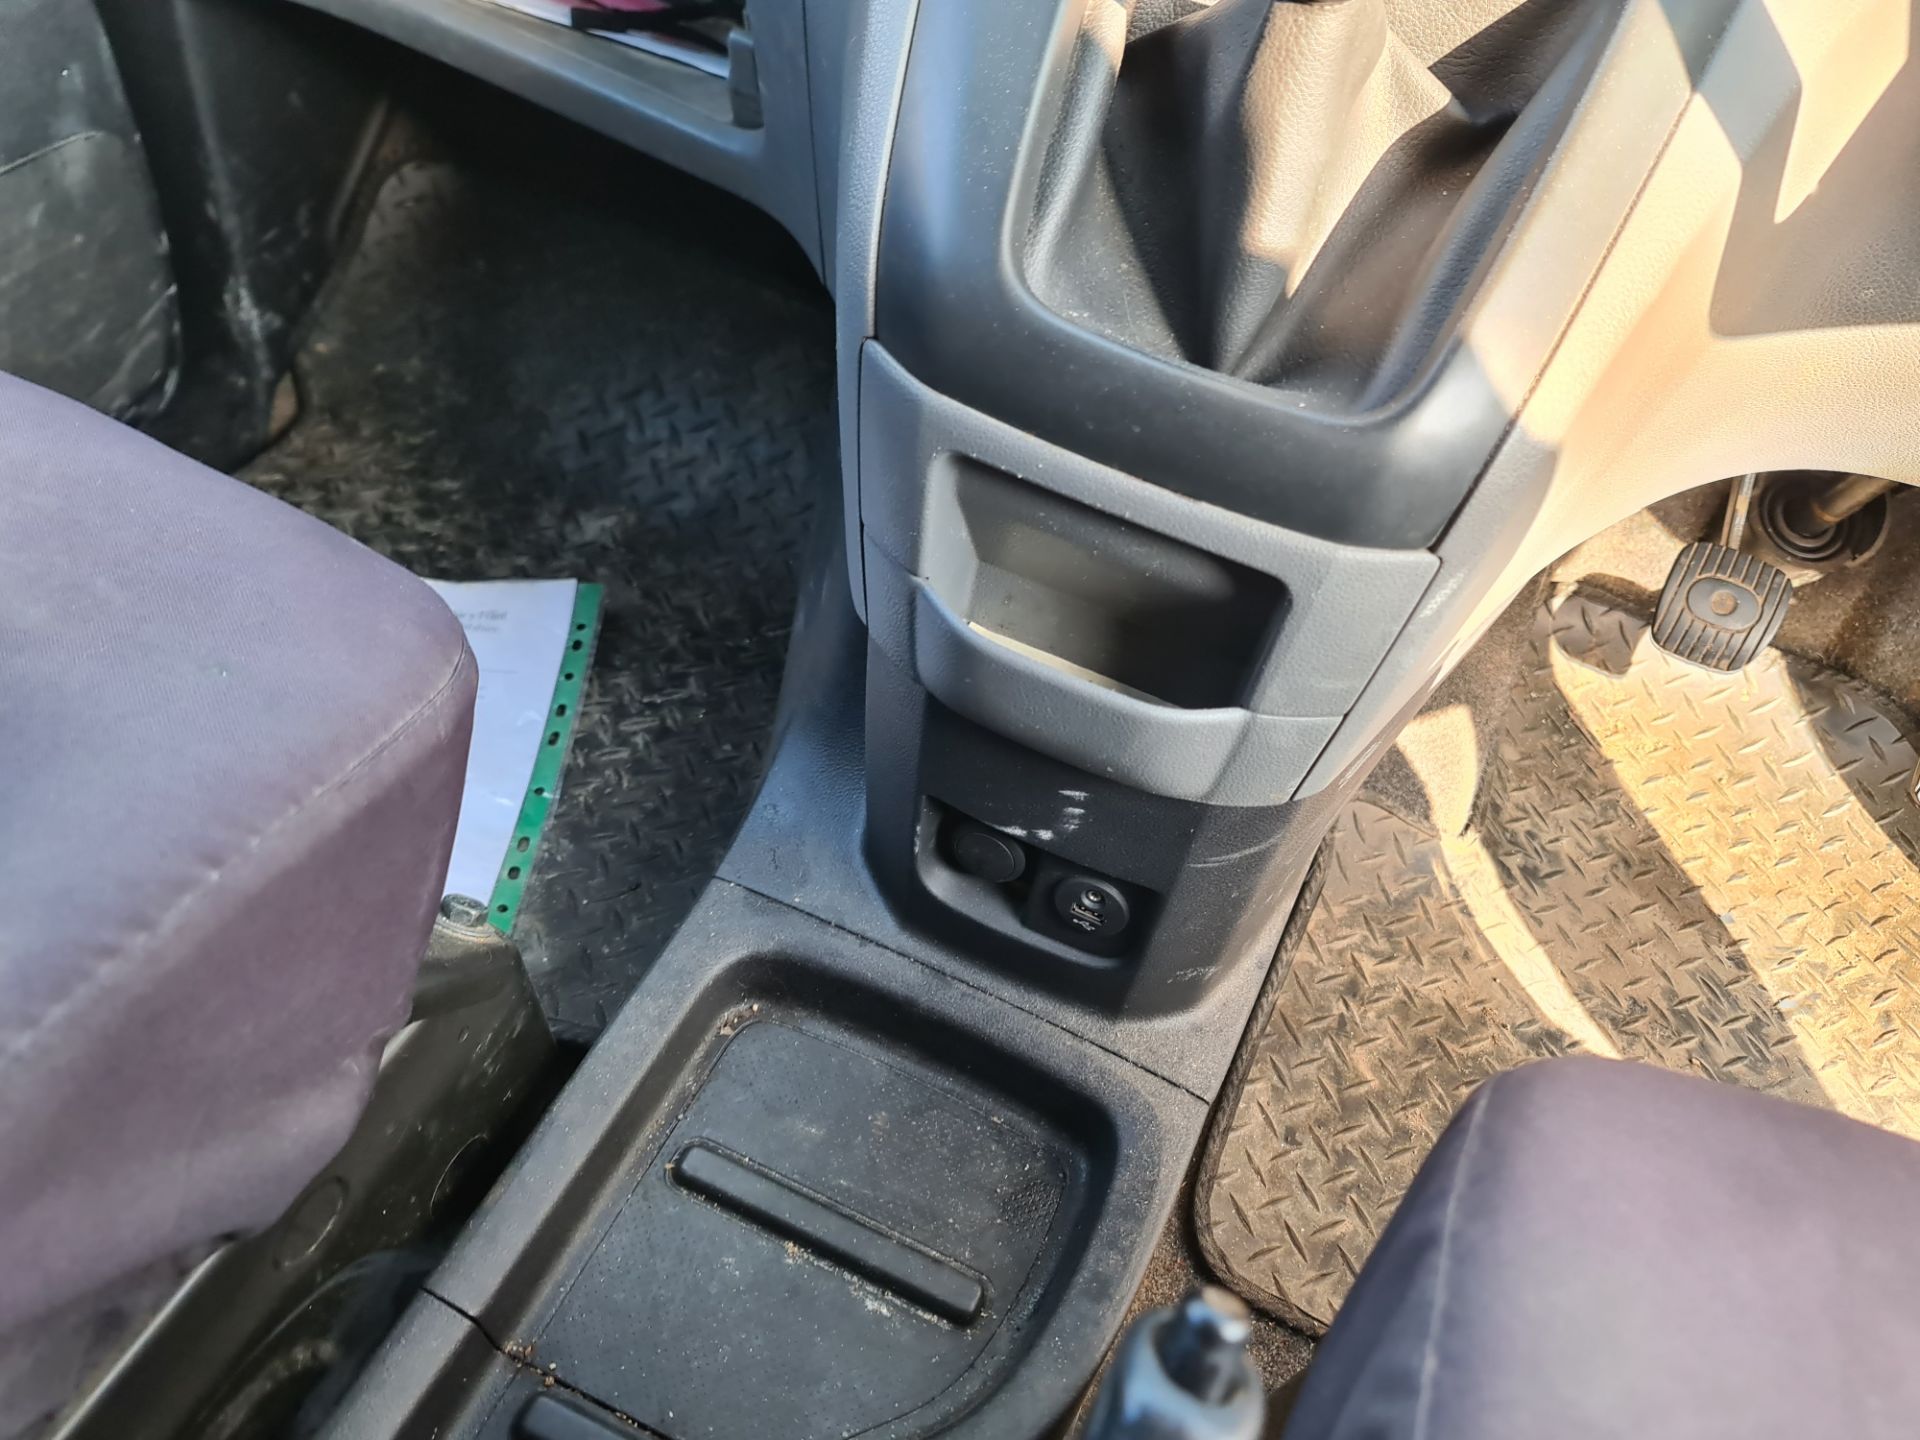 2018 Nissan NV200 Acenta DCI car derived van - Image 85 of 93